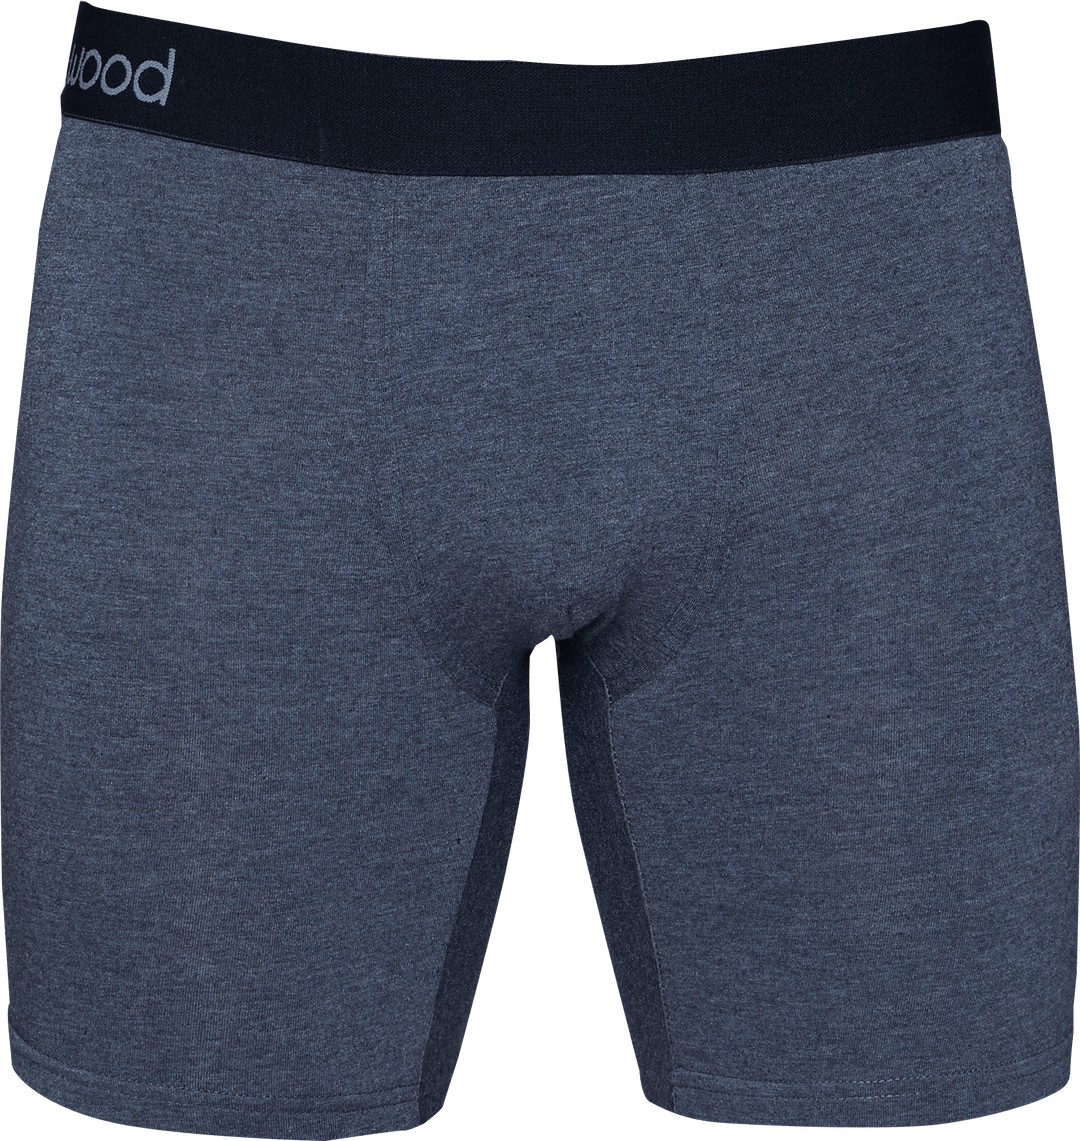 Wood Underwear mens underwear Charcoal / XL Wood Biker Brief